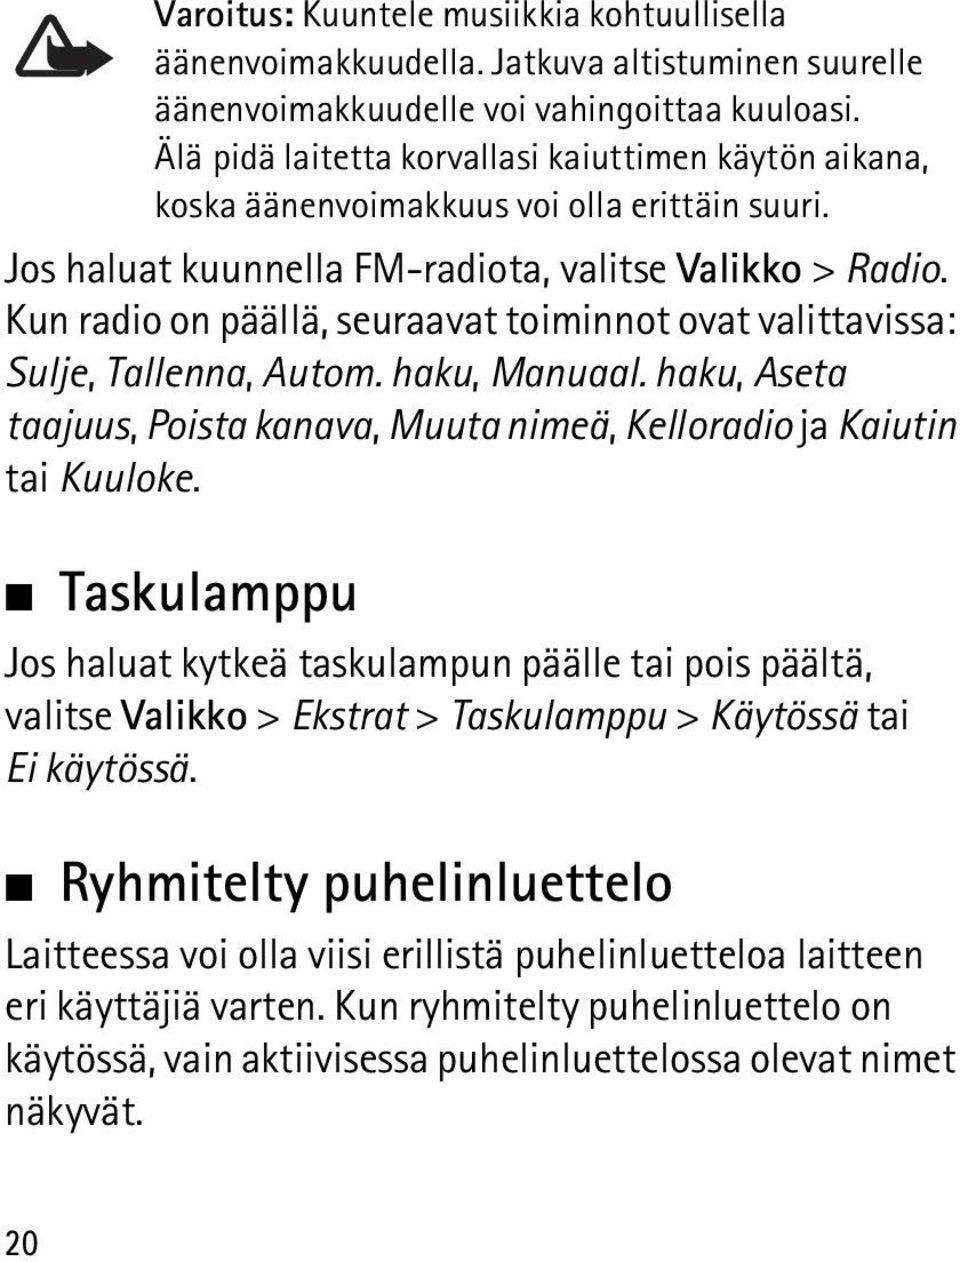 Kun radio on päällä, seuraavat toiminnot ovat valittavissa: Sulje, Tallenna, Autom. haku, Manuaal. haku, Aseta taajuus, Poista kanava, Muuta nimeä, Kelloradio ja Kaiutin tai Kuuloke.